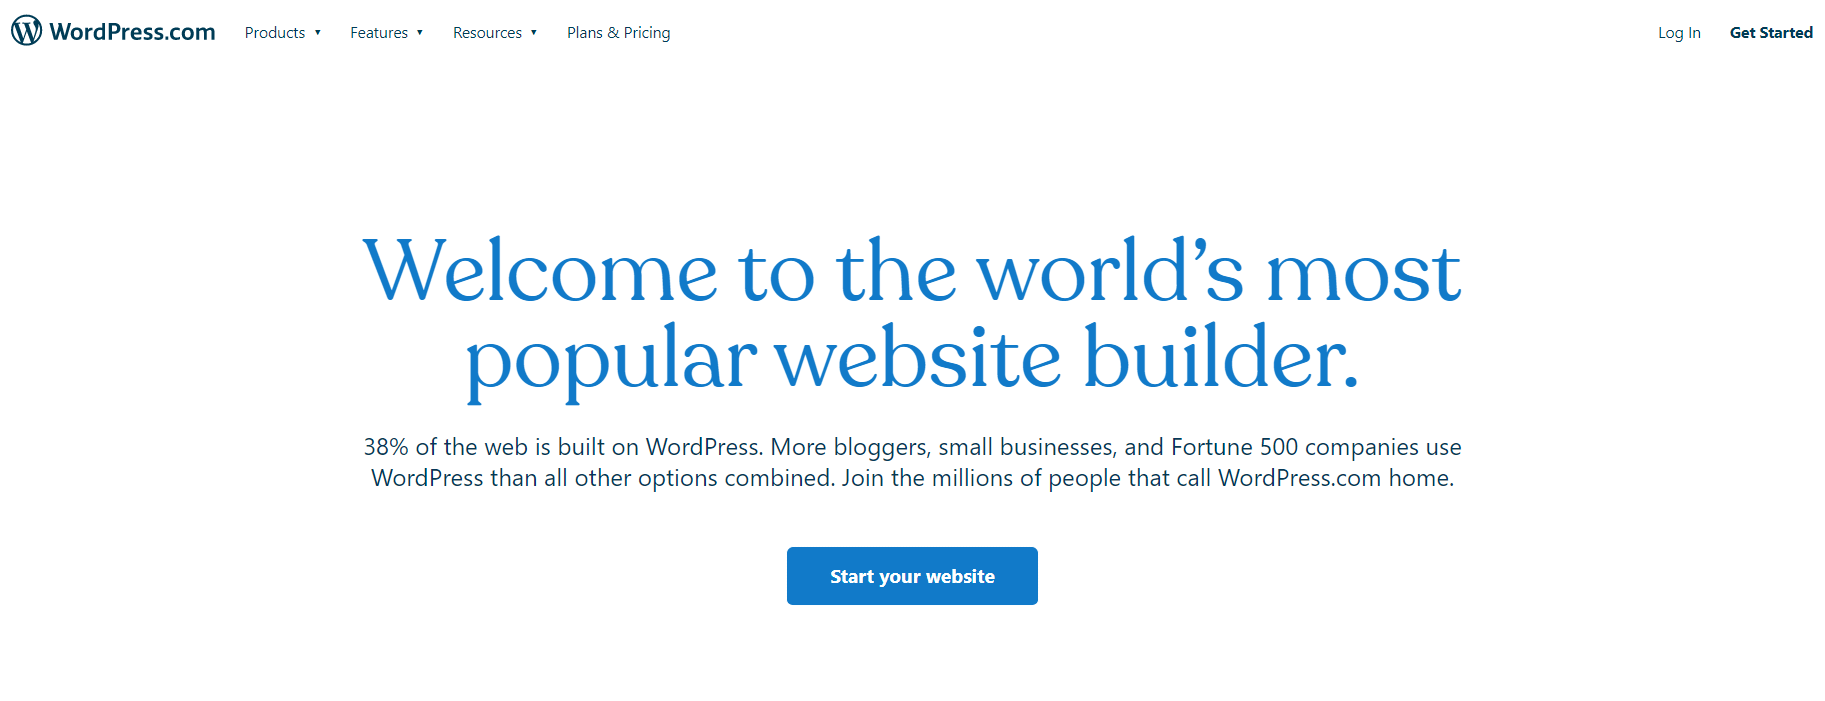 Wordpress.com website builder.